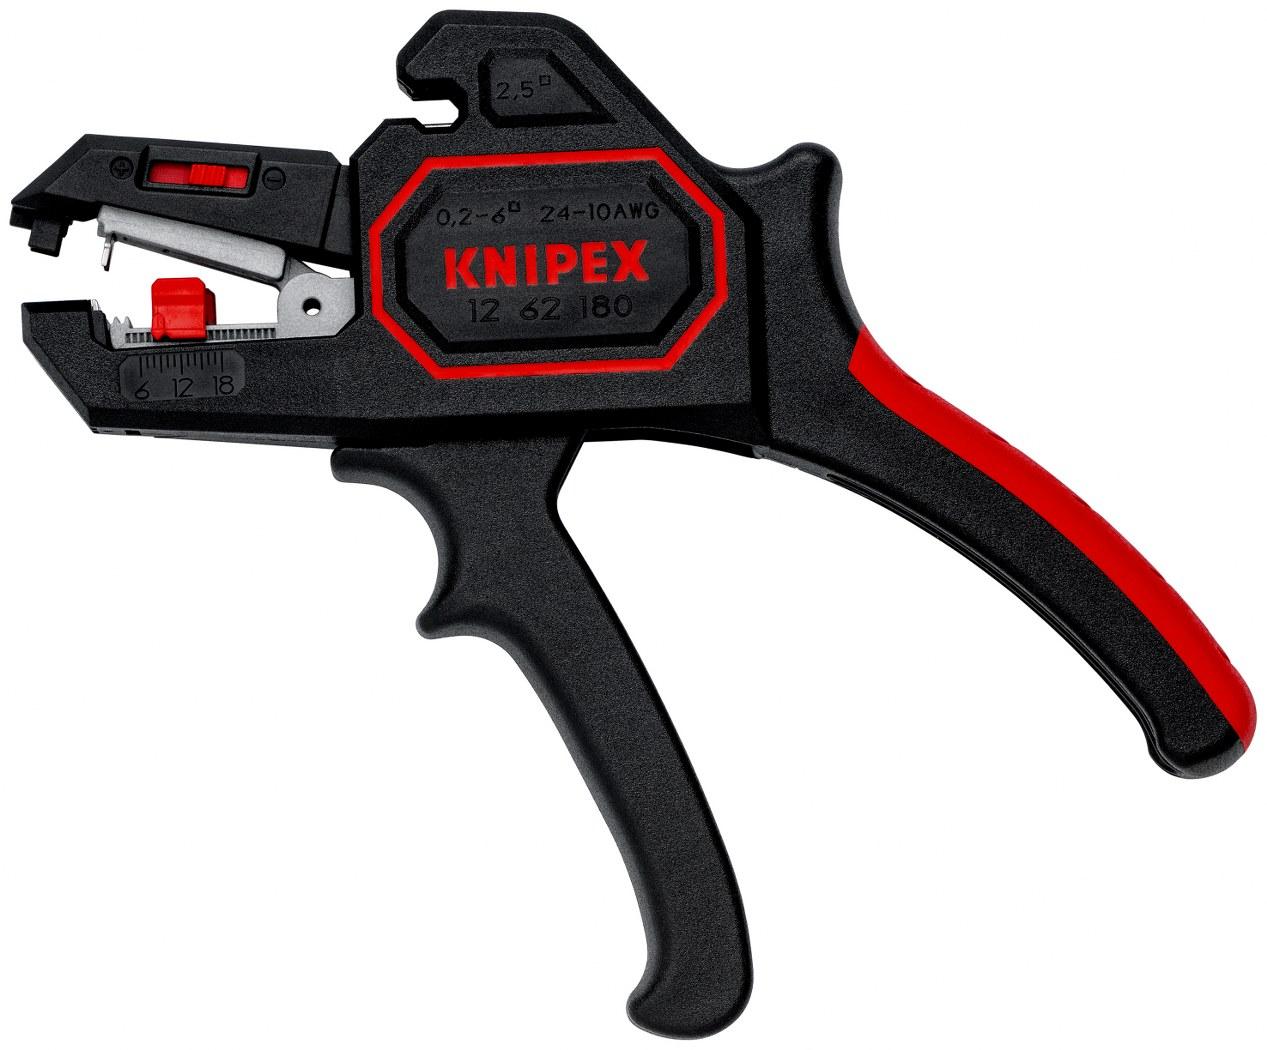 KNIPEX Automatski striper 0.2 - 6 mm² 12 62 180 crni